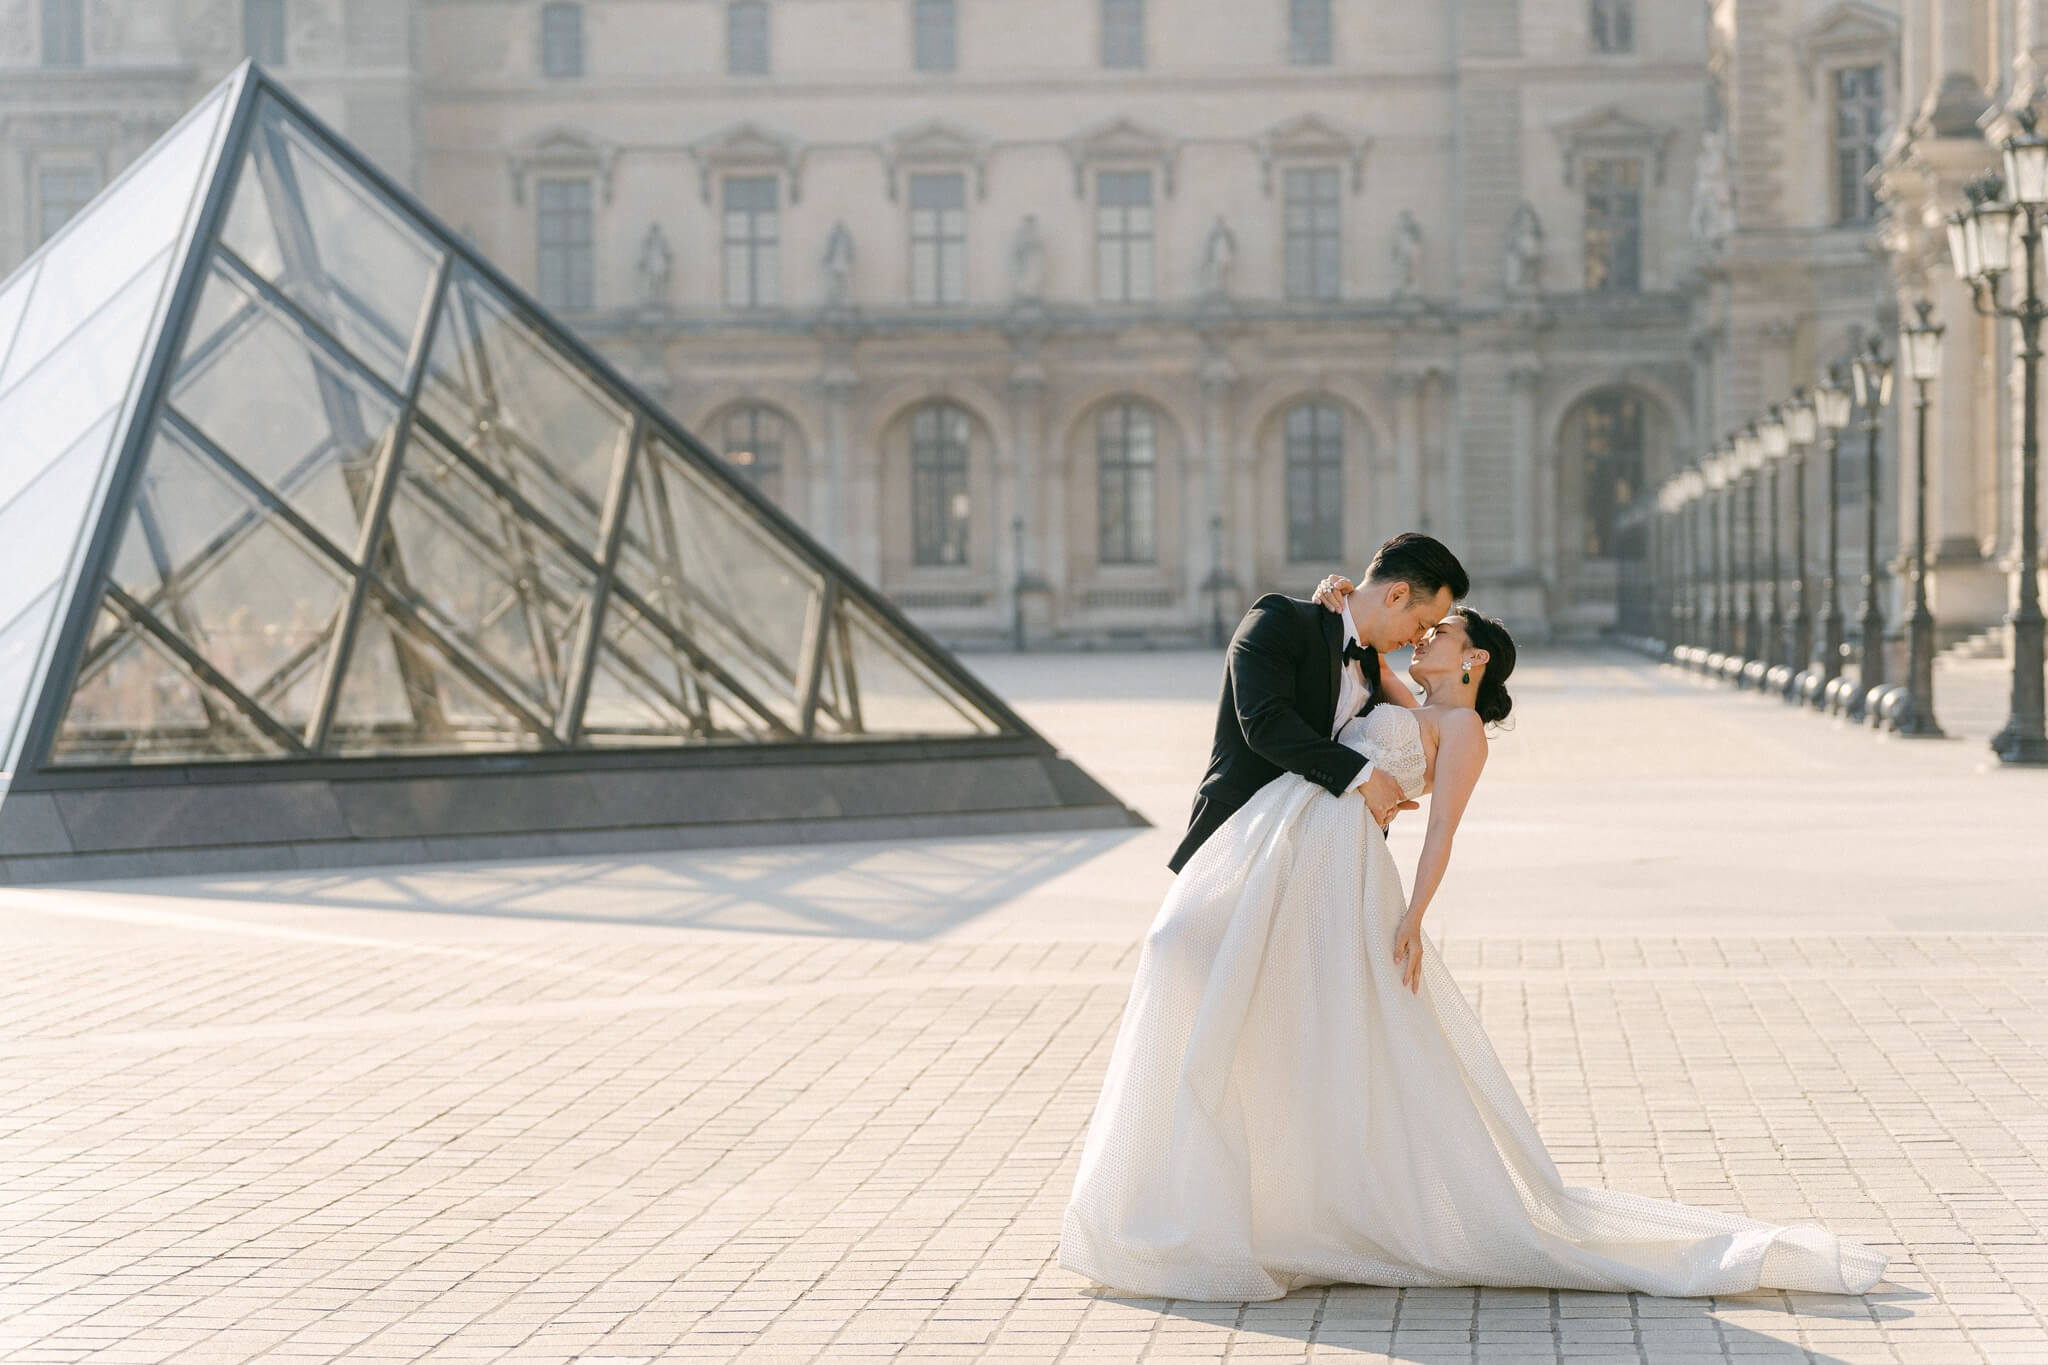 Brautpaar küsst sich liebevoll vor dem Louvre-Museum in Paris mit der berühmten Glaspyramide im Hintergrund bei Sonnenaufgang